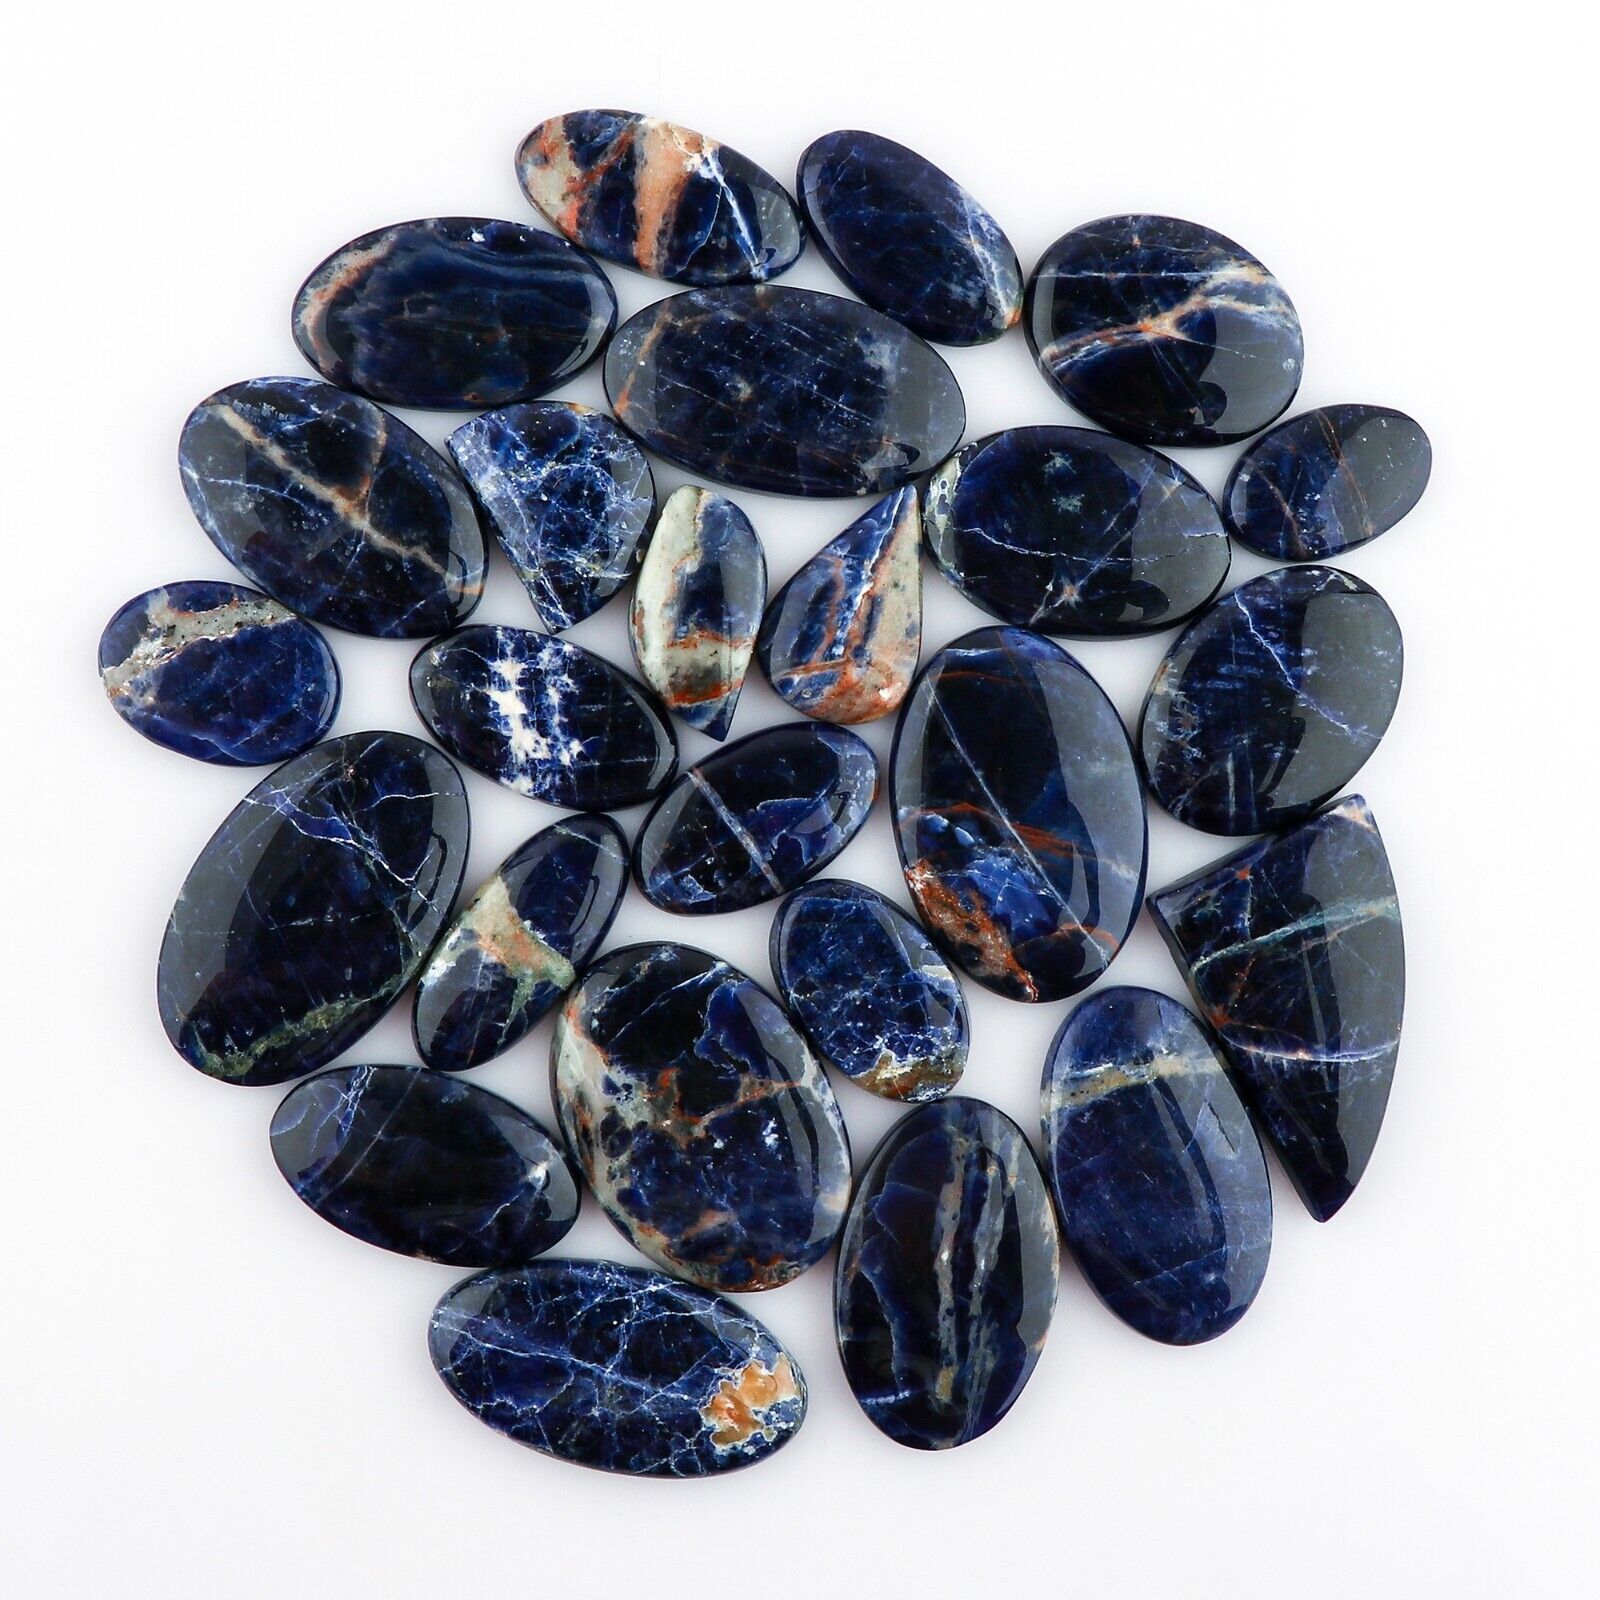 10pcs Natural Sodalite Gemstones Cabochon Crystal Wholesale Loose Healing Stones